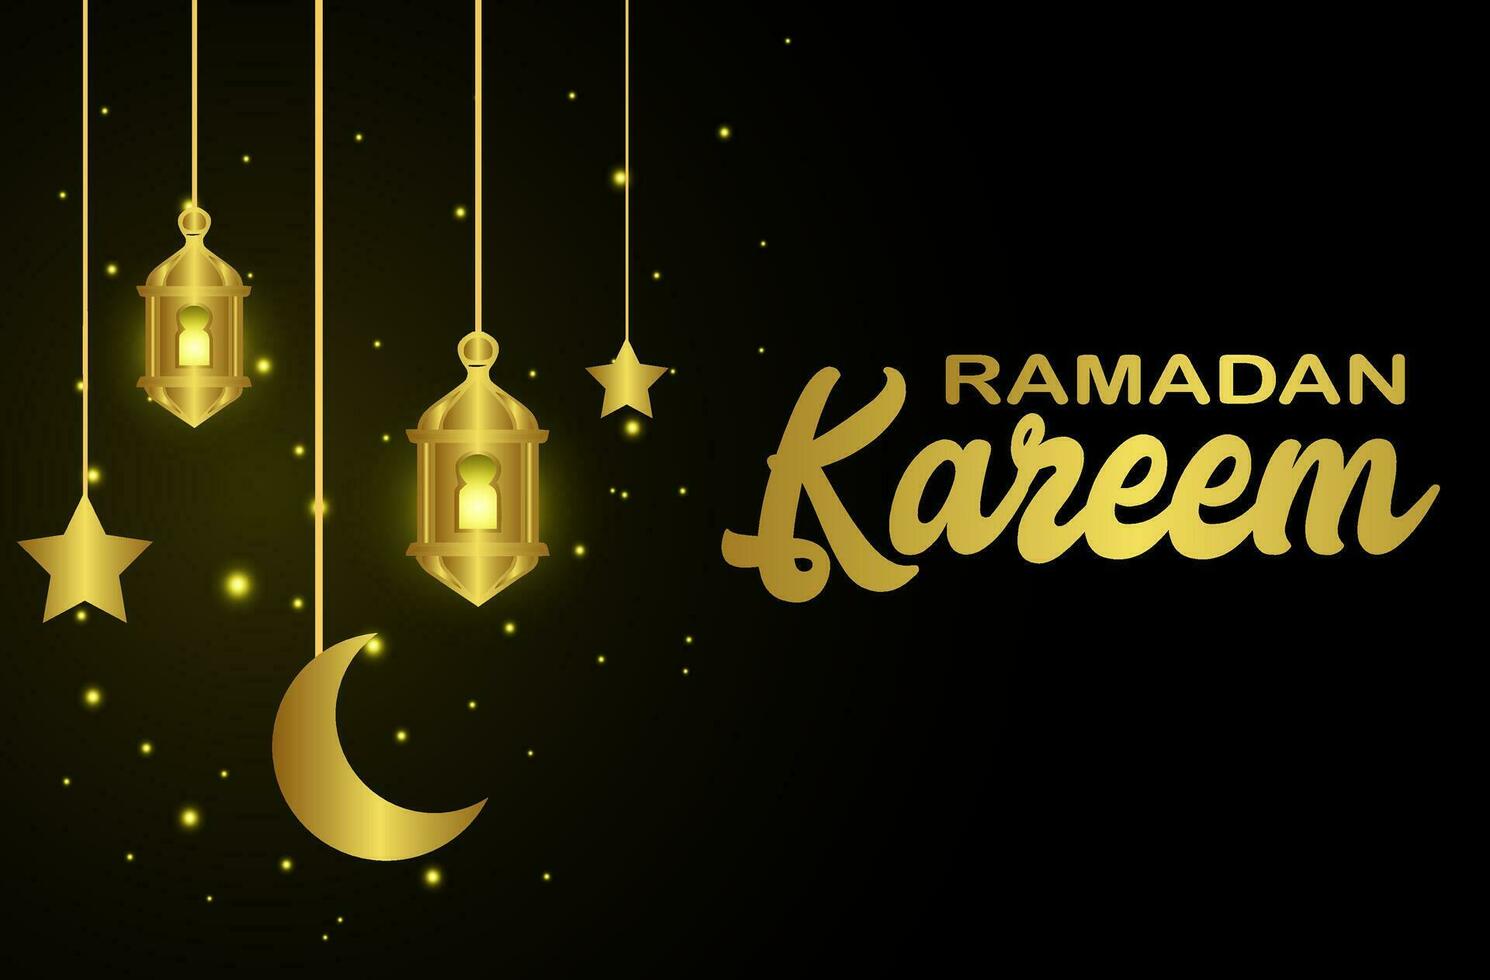 islamic halvmåne med moské för ramadan kareem och eid. gyllene halv måne mönster, bakgrund illustration. vektor